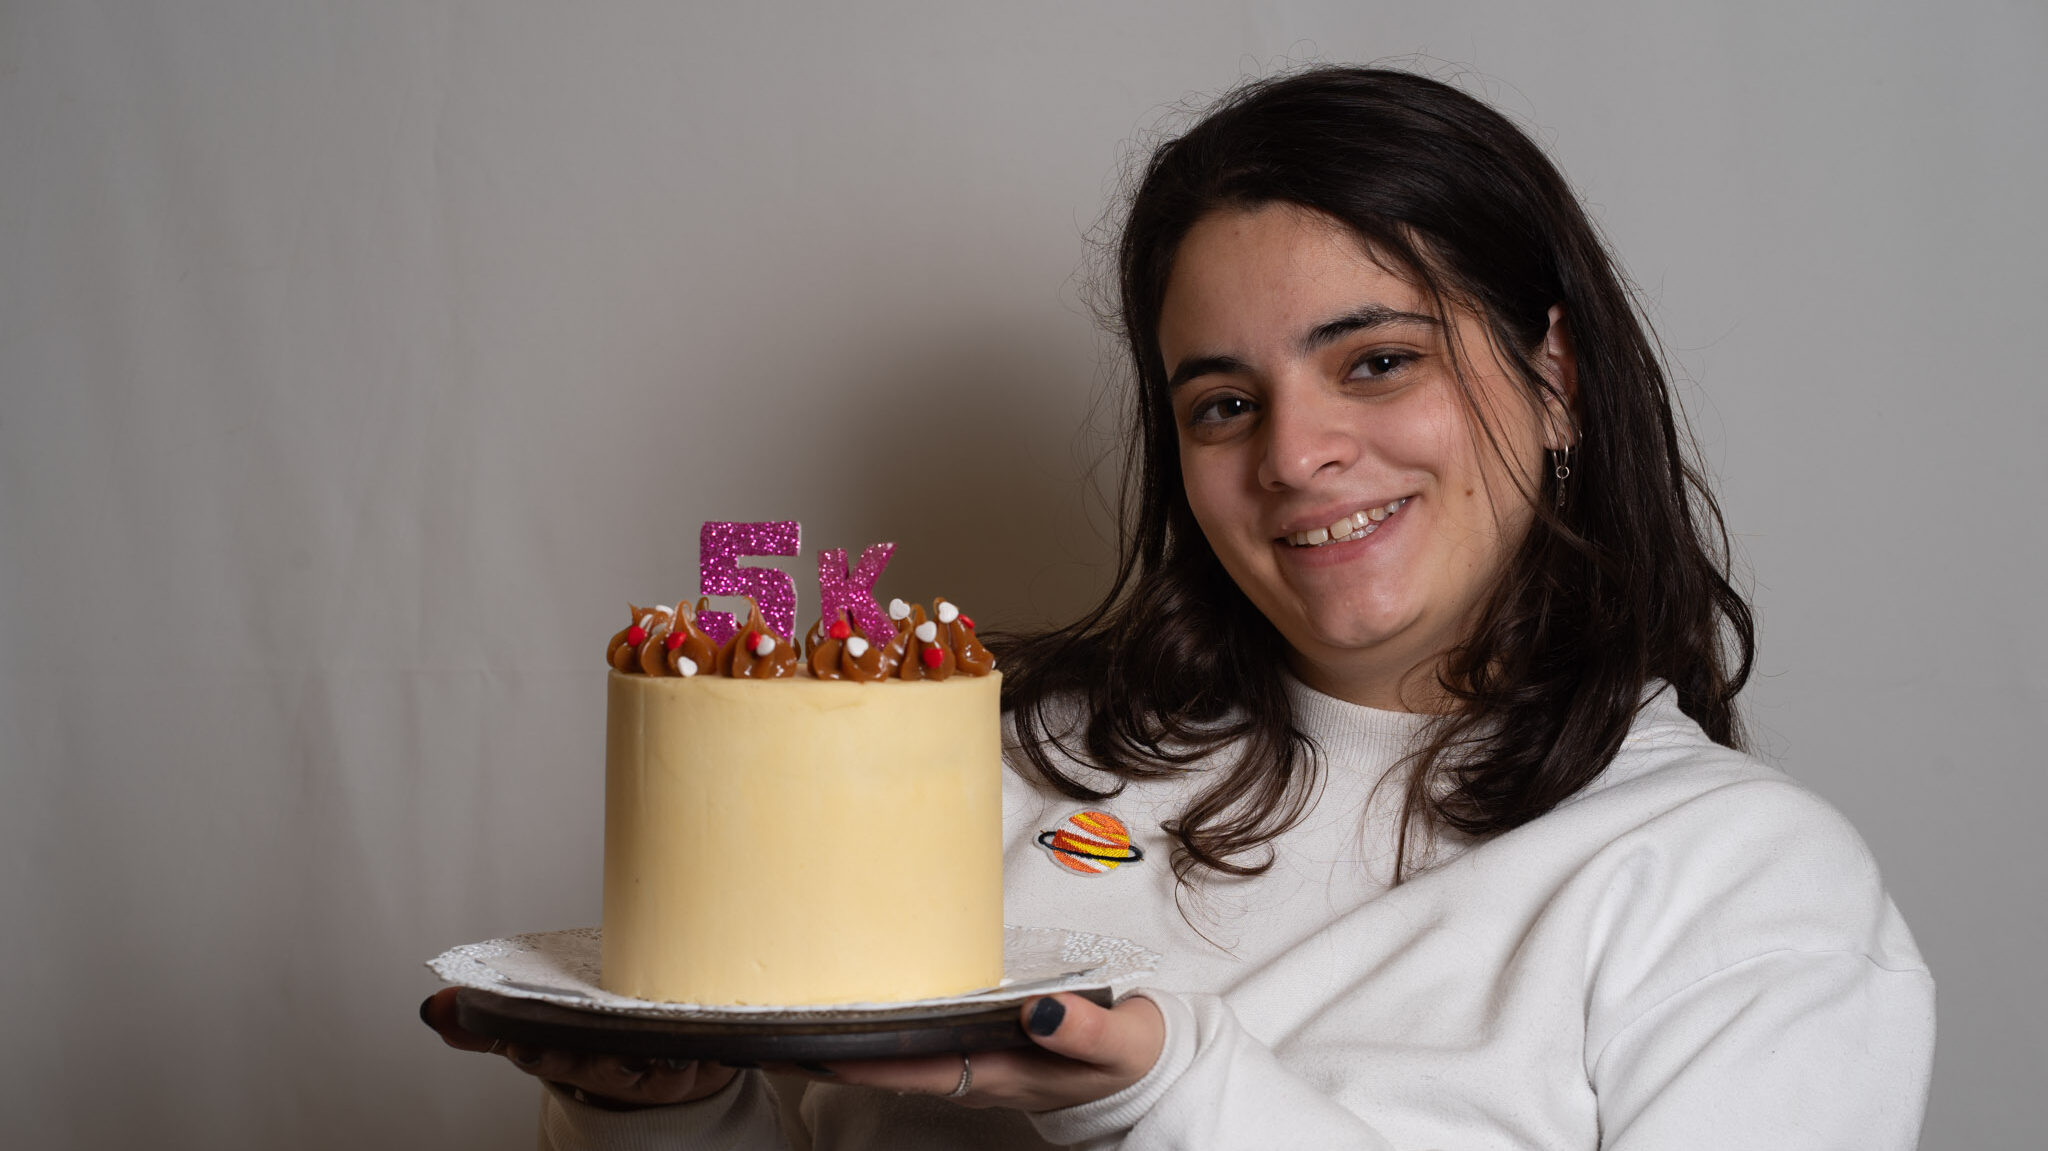 Gracia festeja sus más de 5K seguidores en instagram con esta torta deliciosa y sencilla